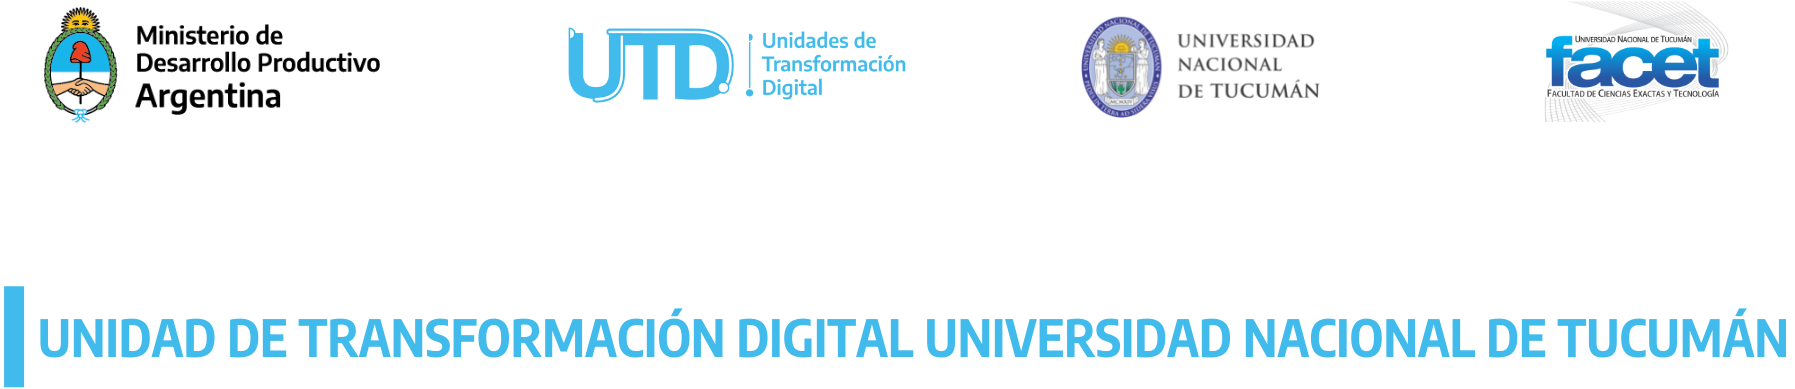 Unidad de Transformación Digital logo